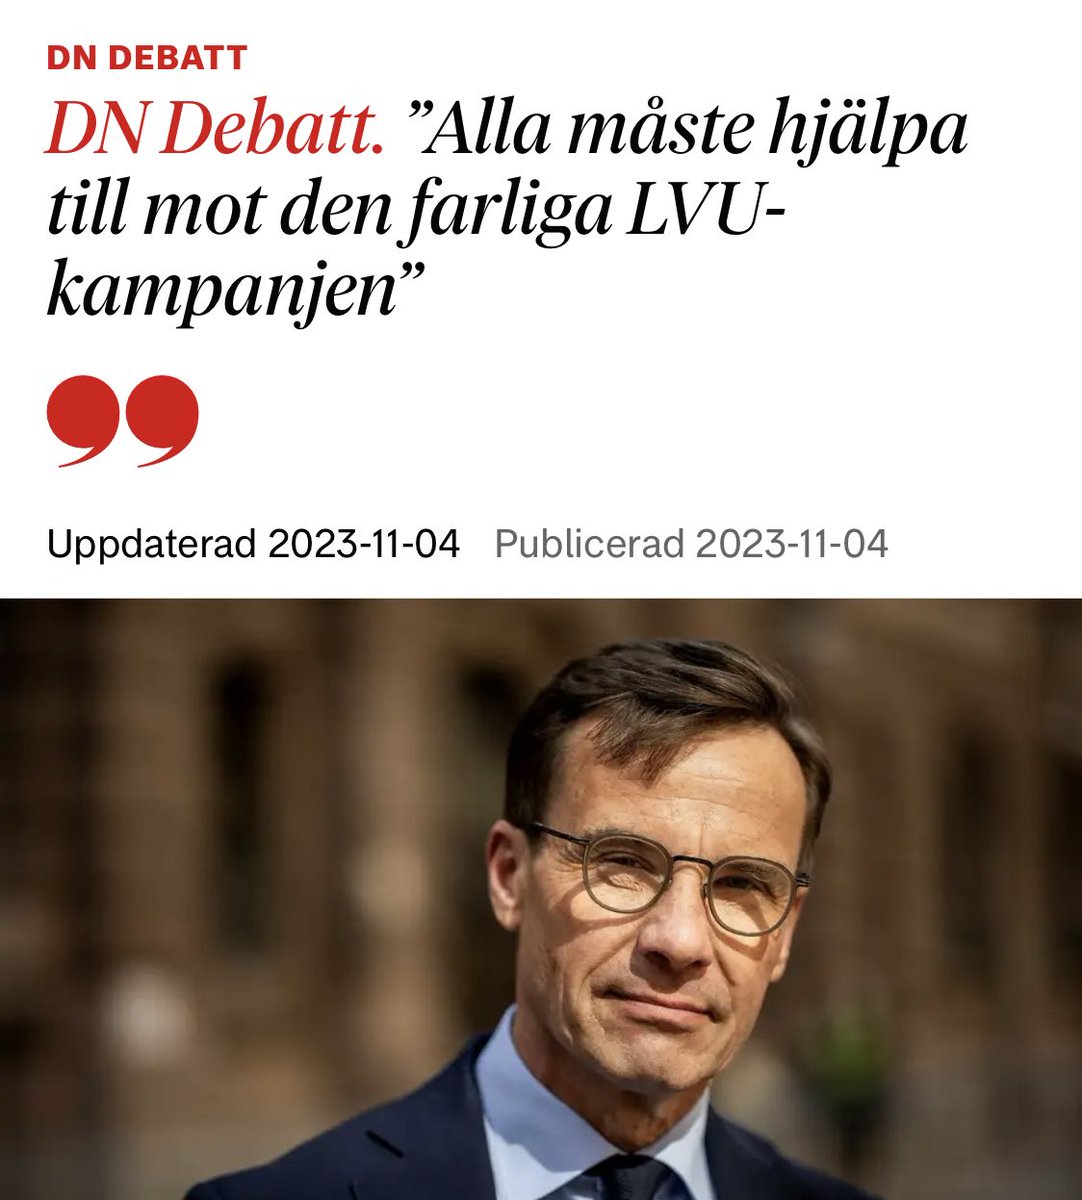 SD har alltså aktivt deltagit i LVU-kampanjen, som Myndigheten för Psykologiskt försvar kallar ”Den största påverkanskampanj som Sverige har träffats av någonsin”. Så nog hjälpte SD till allt - men för, inte mot.